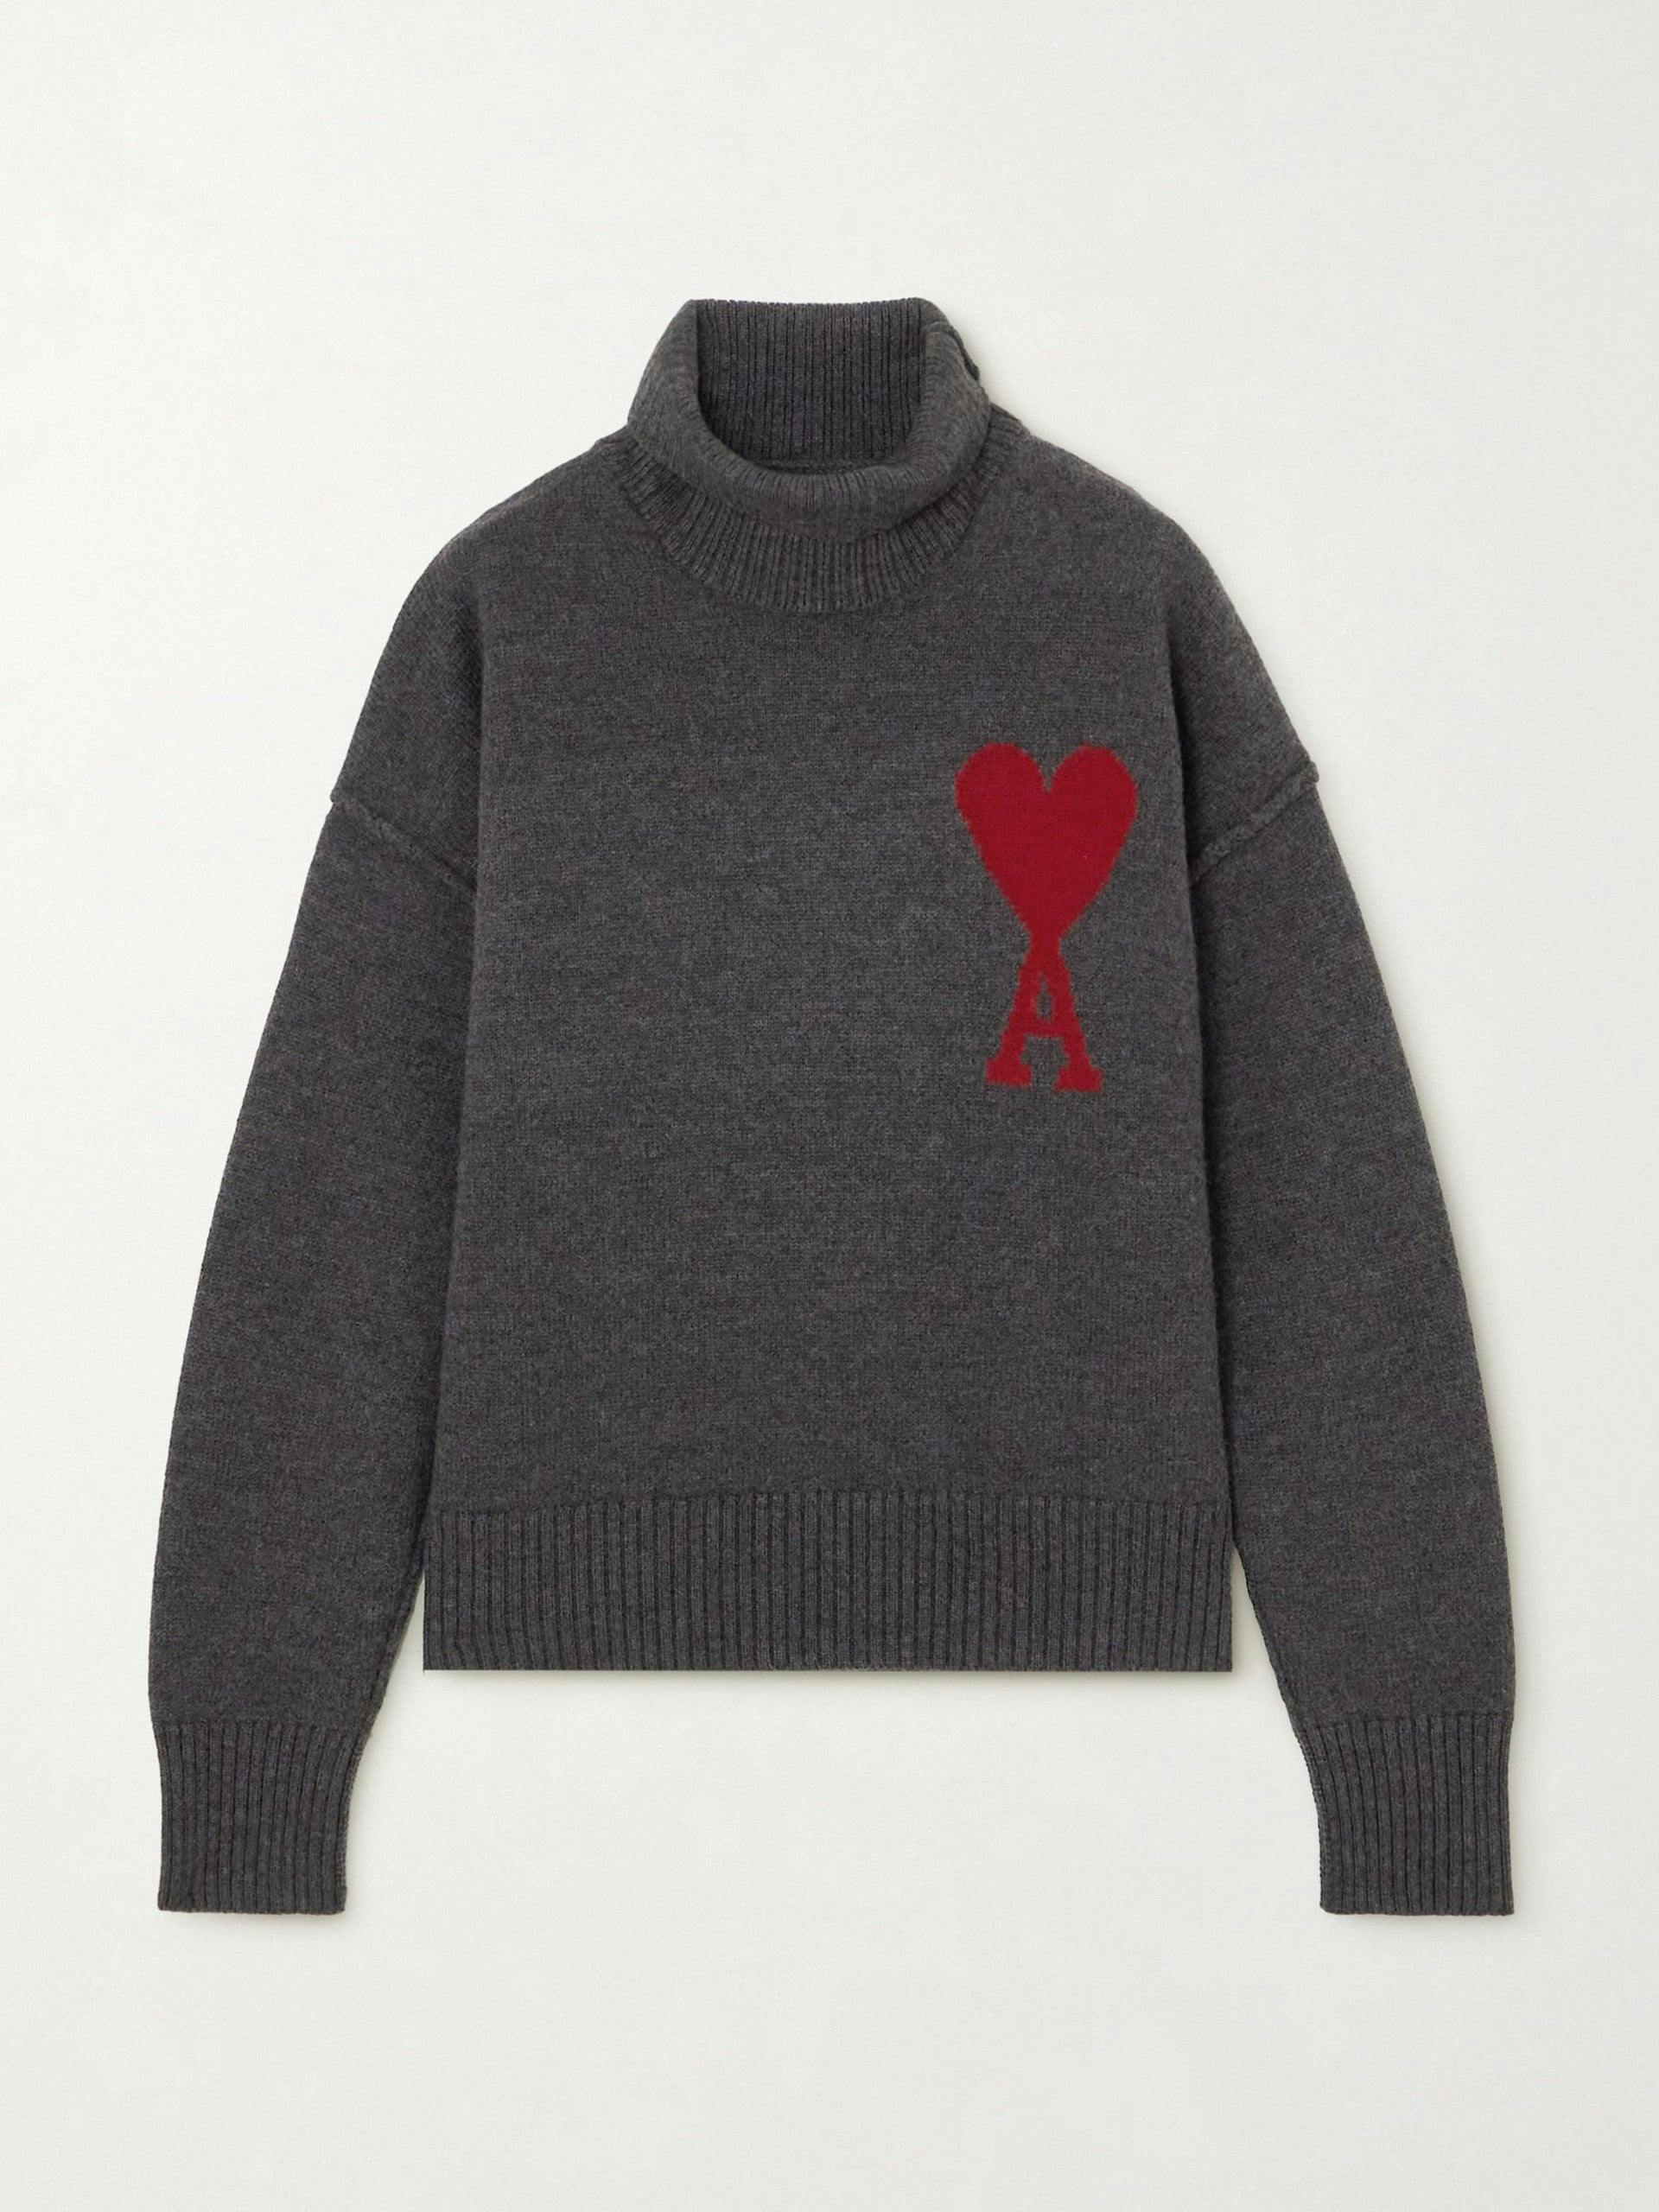 ADC intarsia wool turtleneck sweater